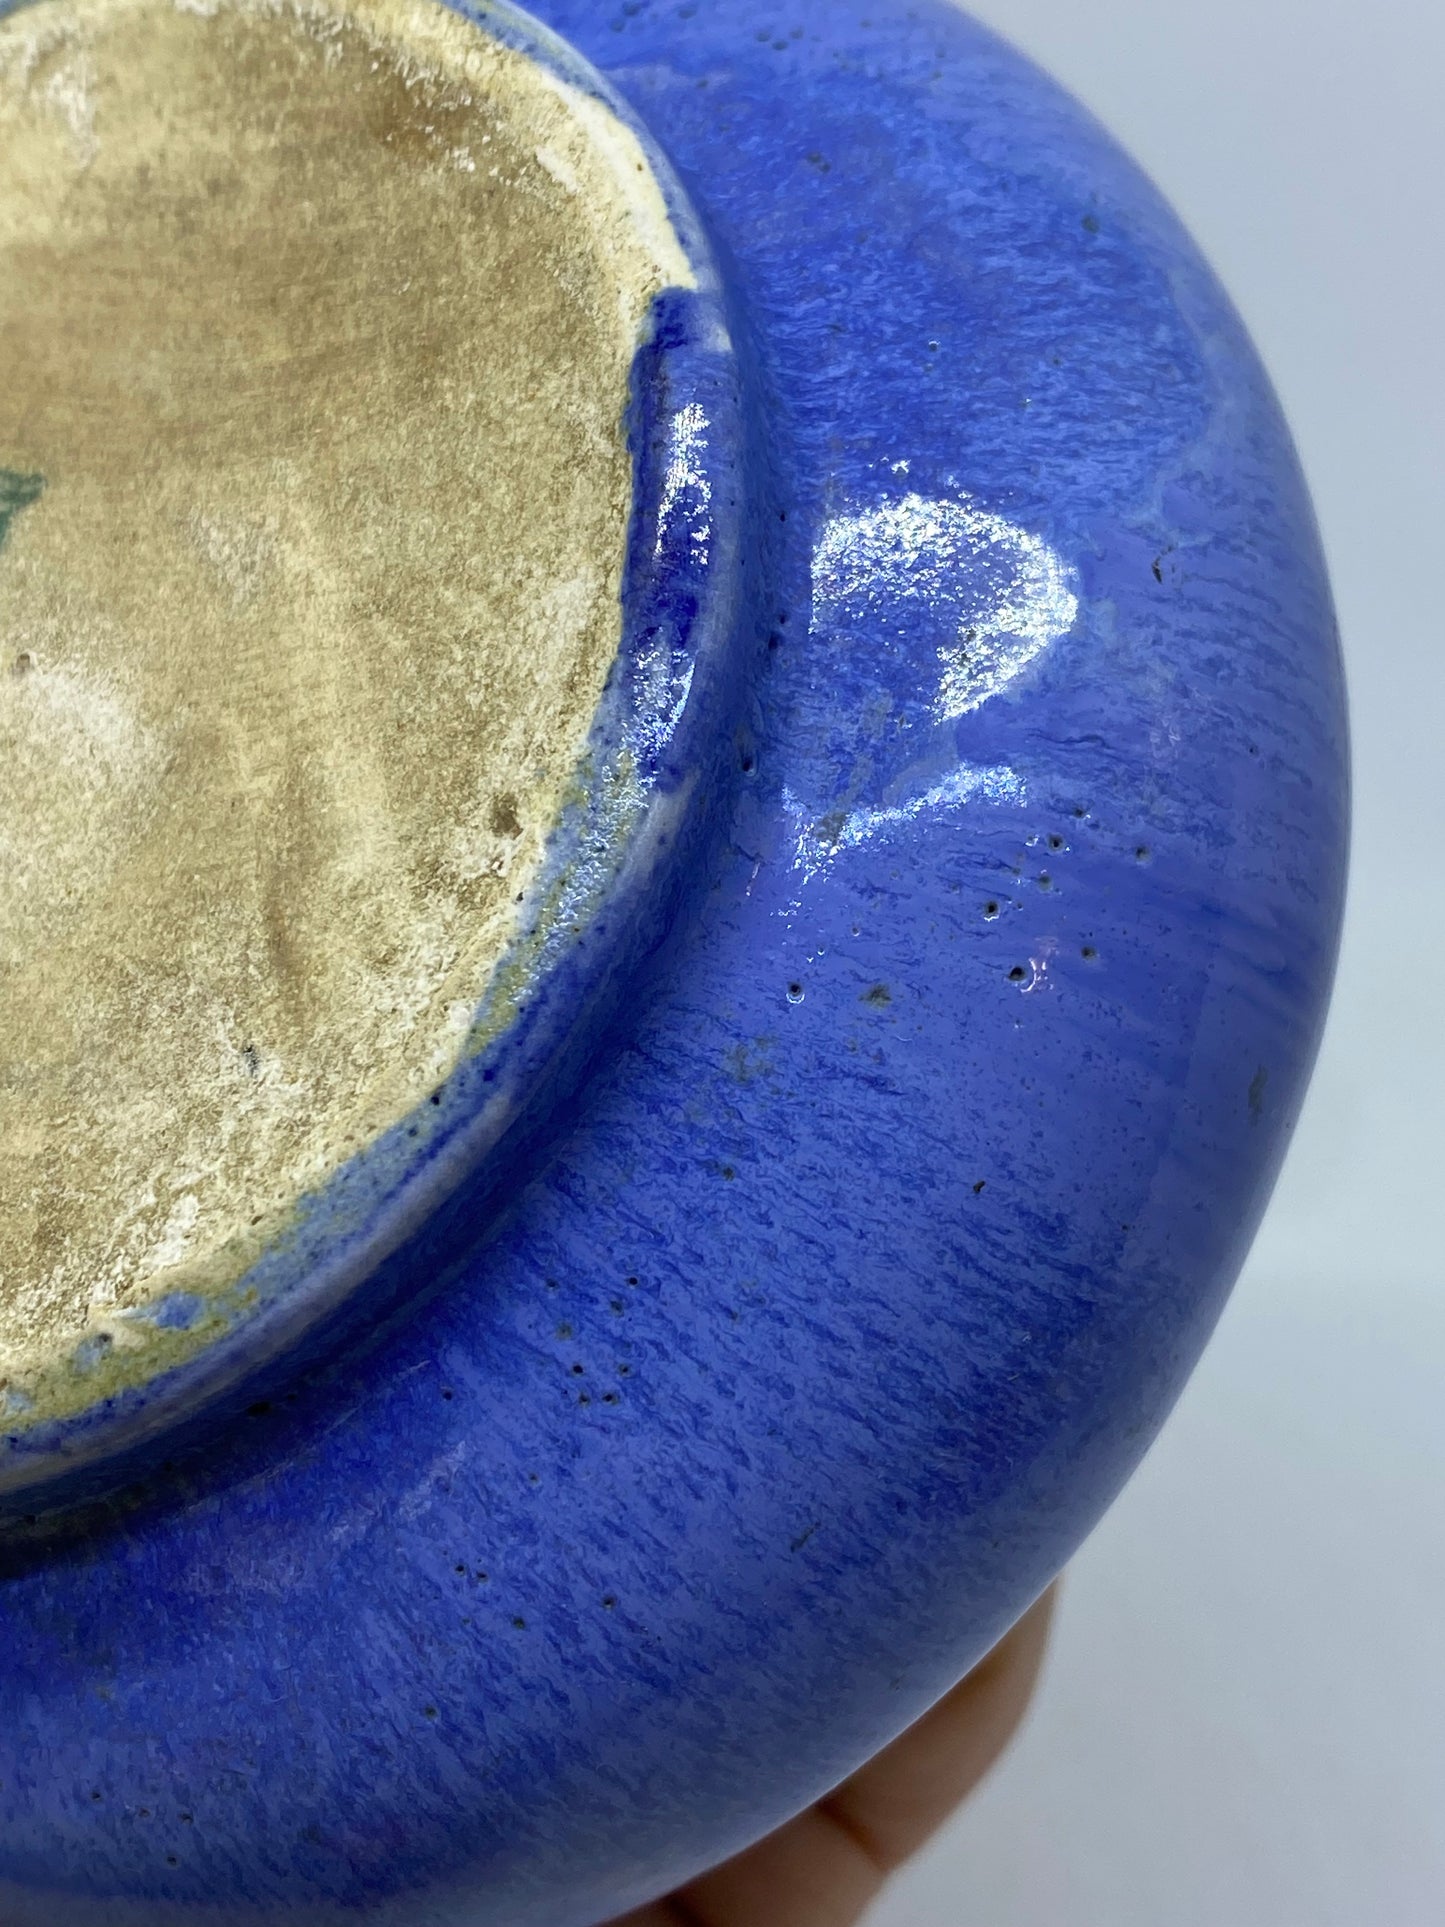 Vintage Melrose Pottery Vase - blue